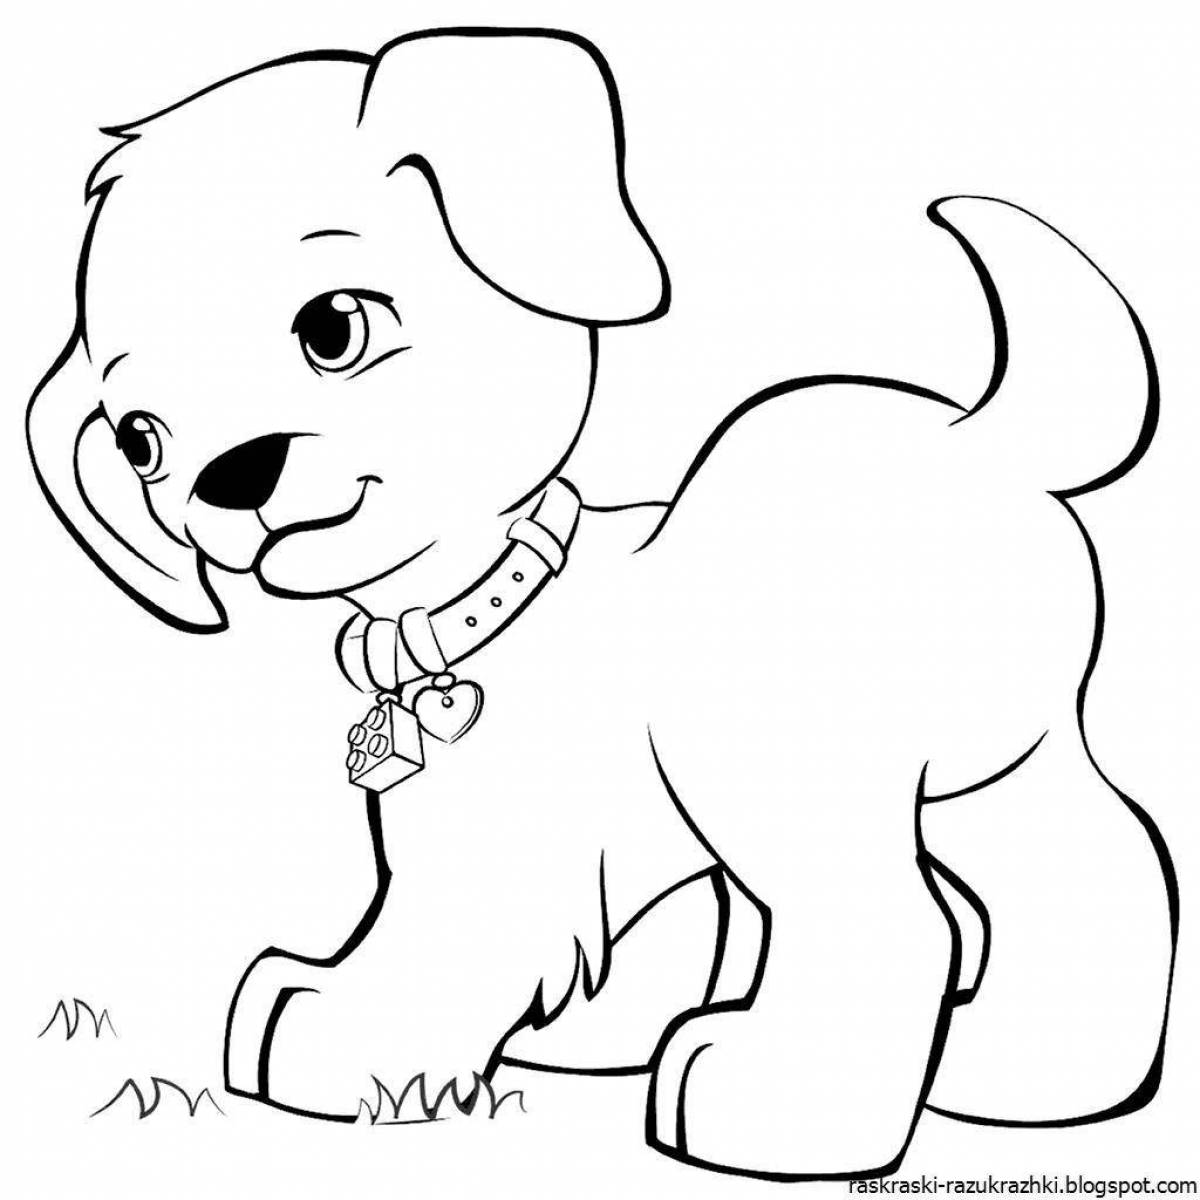 Любознательная раскраска рисунок щенка